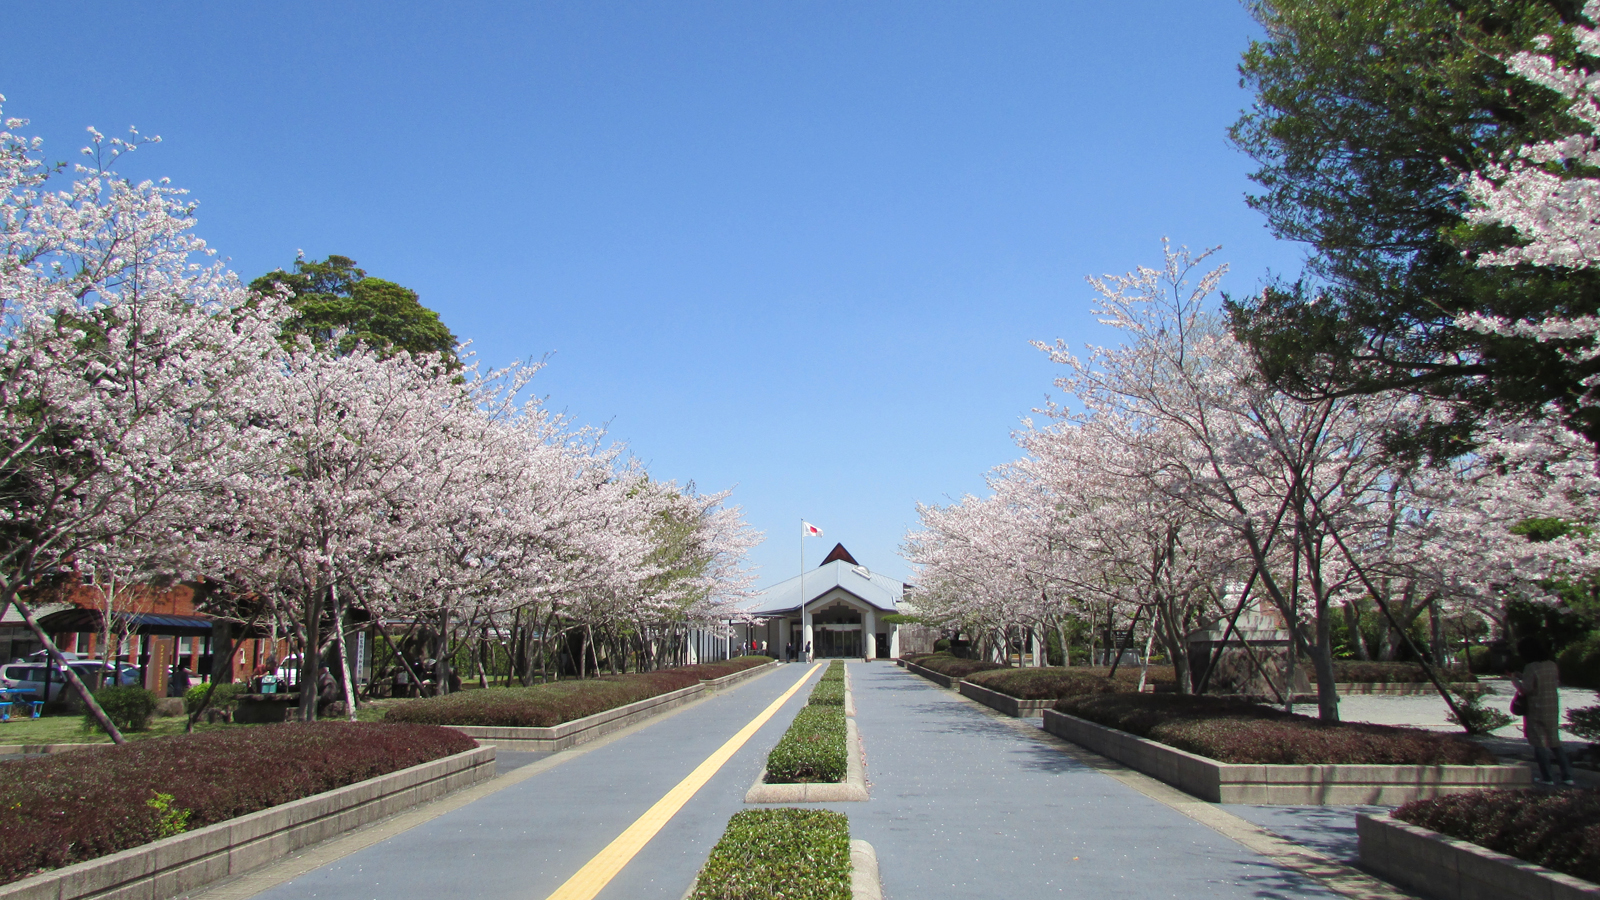 知覧平和公園の桜並木は平和のシンボルとして、市民に親しまれています